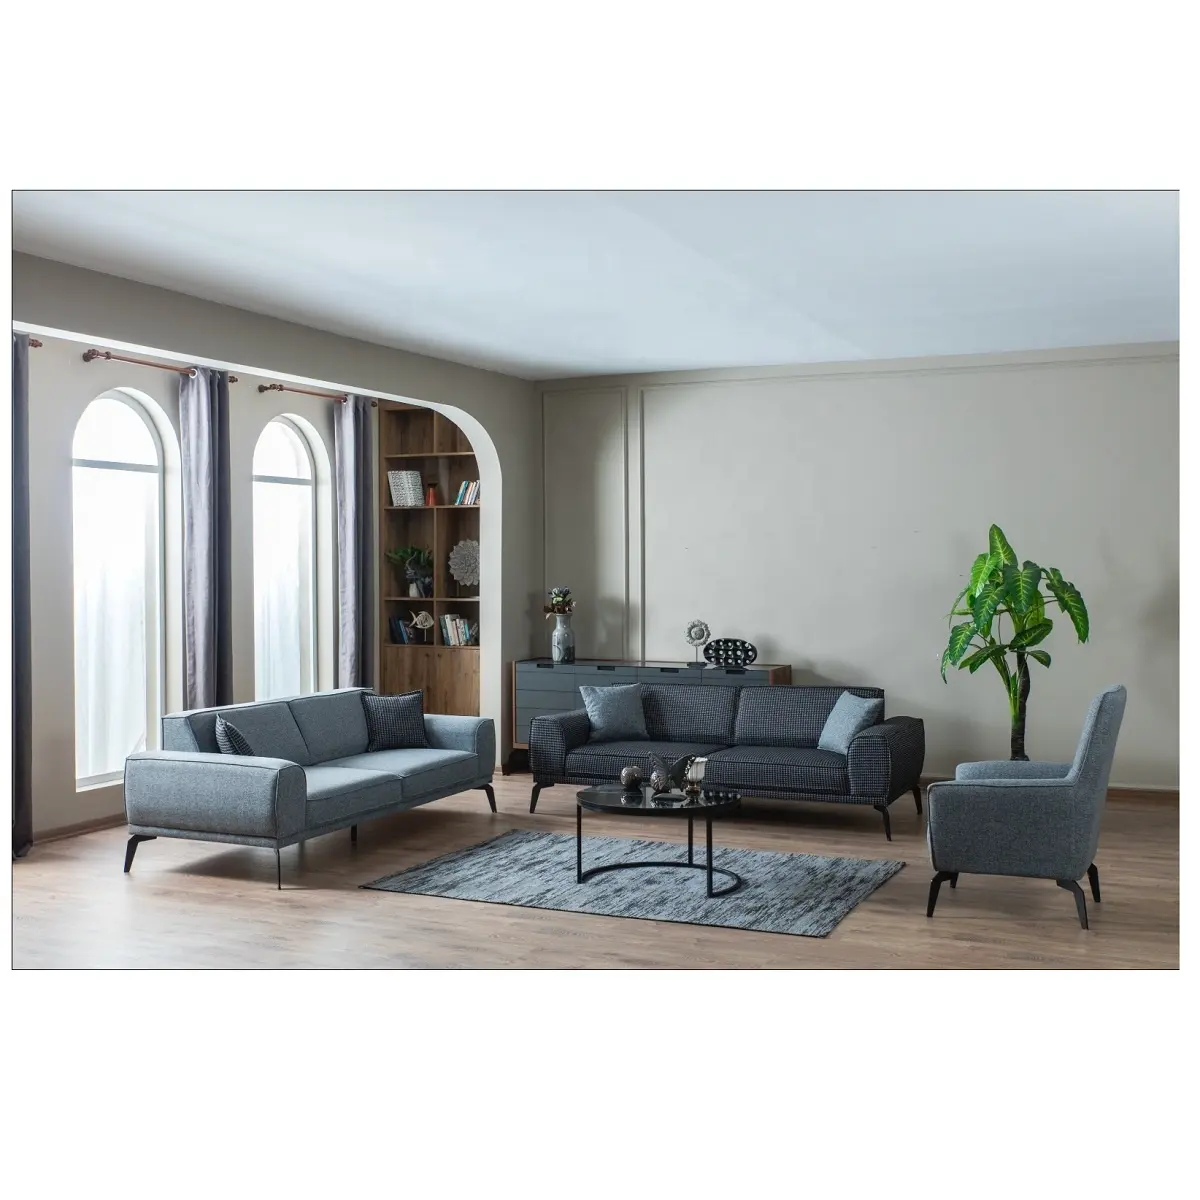 Çekyat seti türk mobilya rahat Modern oturma odası kanepe ev mobilya Modern kanepe türkiyede yapılan OEM fabrika yapımı